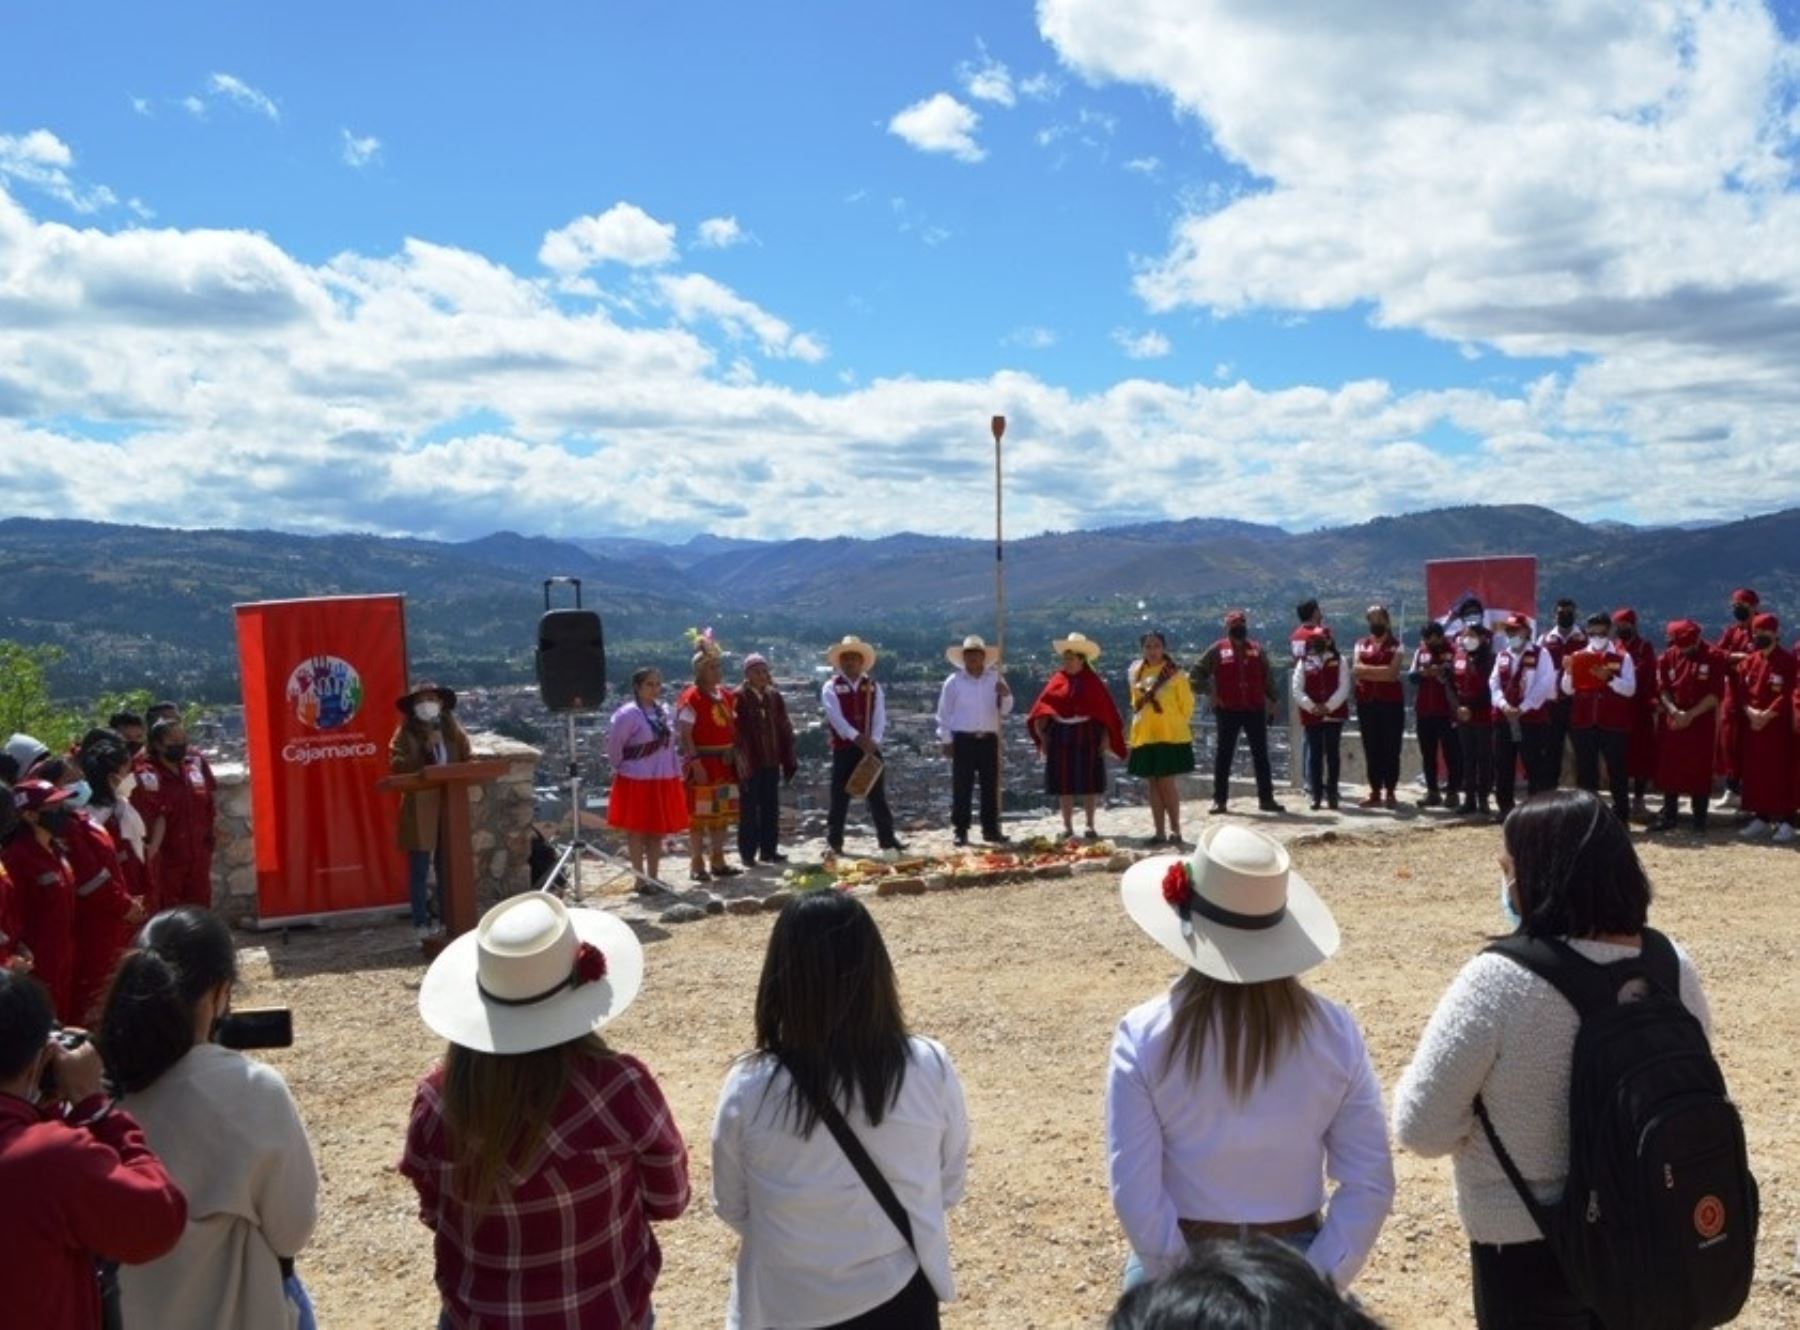 Cajamarca reabre el atractivo turístico Santa Apolonia tras ocho meses de permanecer cerrada por medidas de seguridad. Foto: ANDINA/difusión.